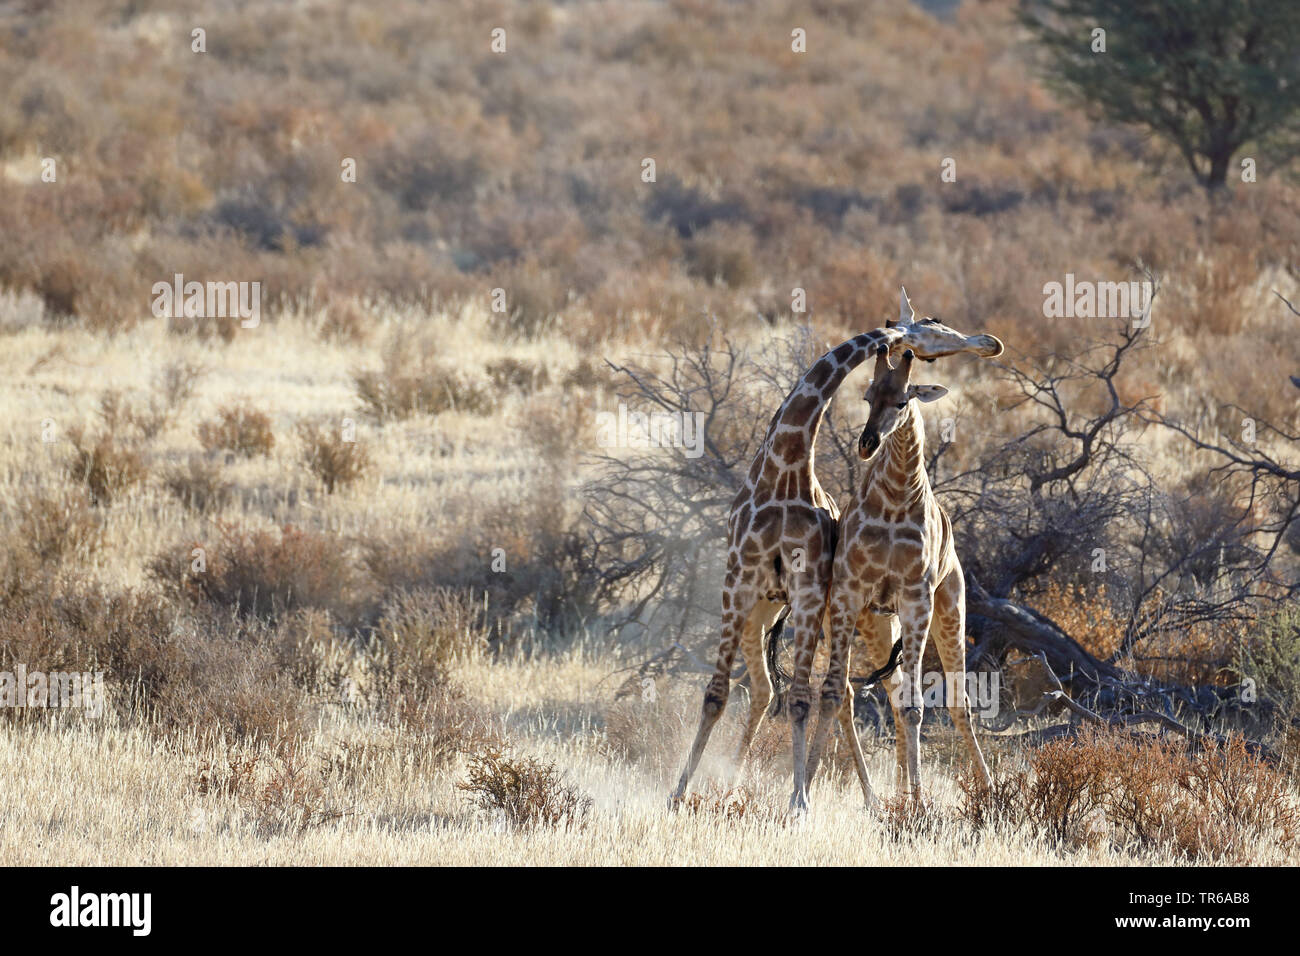 Jirafa (Giraffa camelopardalis), lucha territorial entre dos varones de jirafas en la sabana, África del Sur, el Parque Transfronterizo Kgalagadi Foto de stock